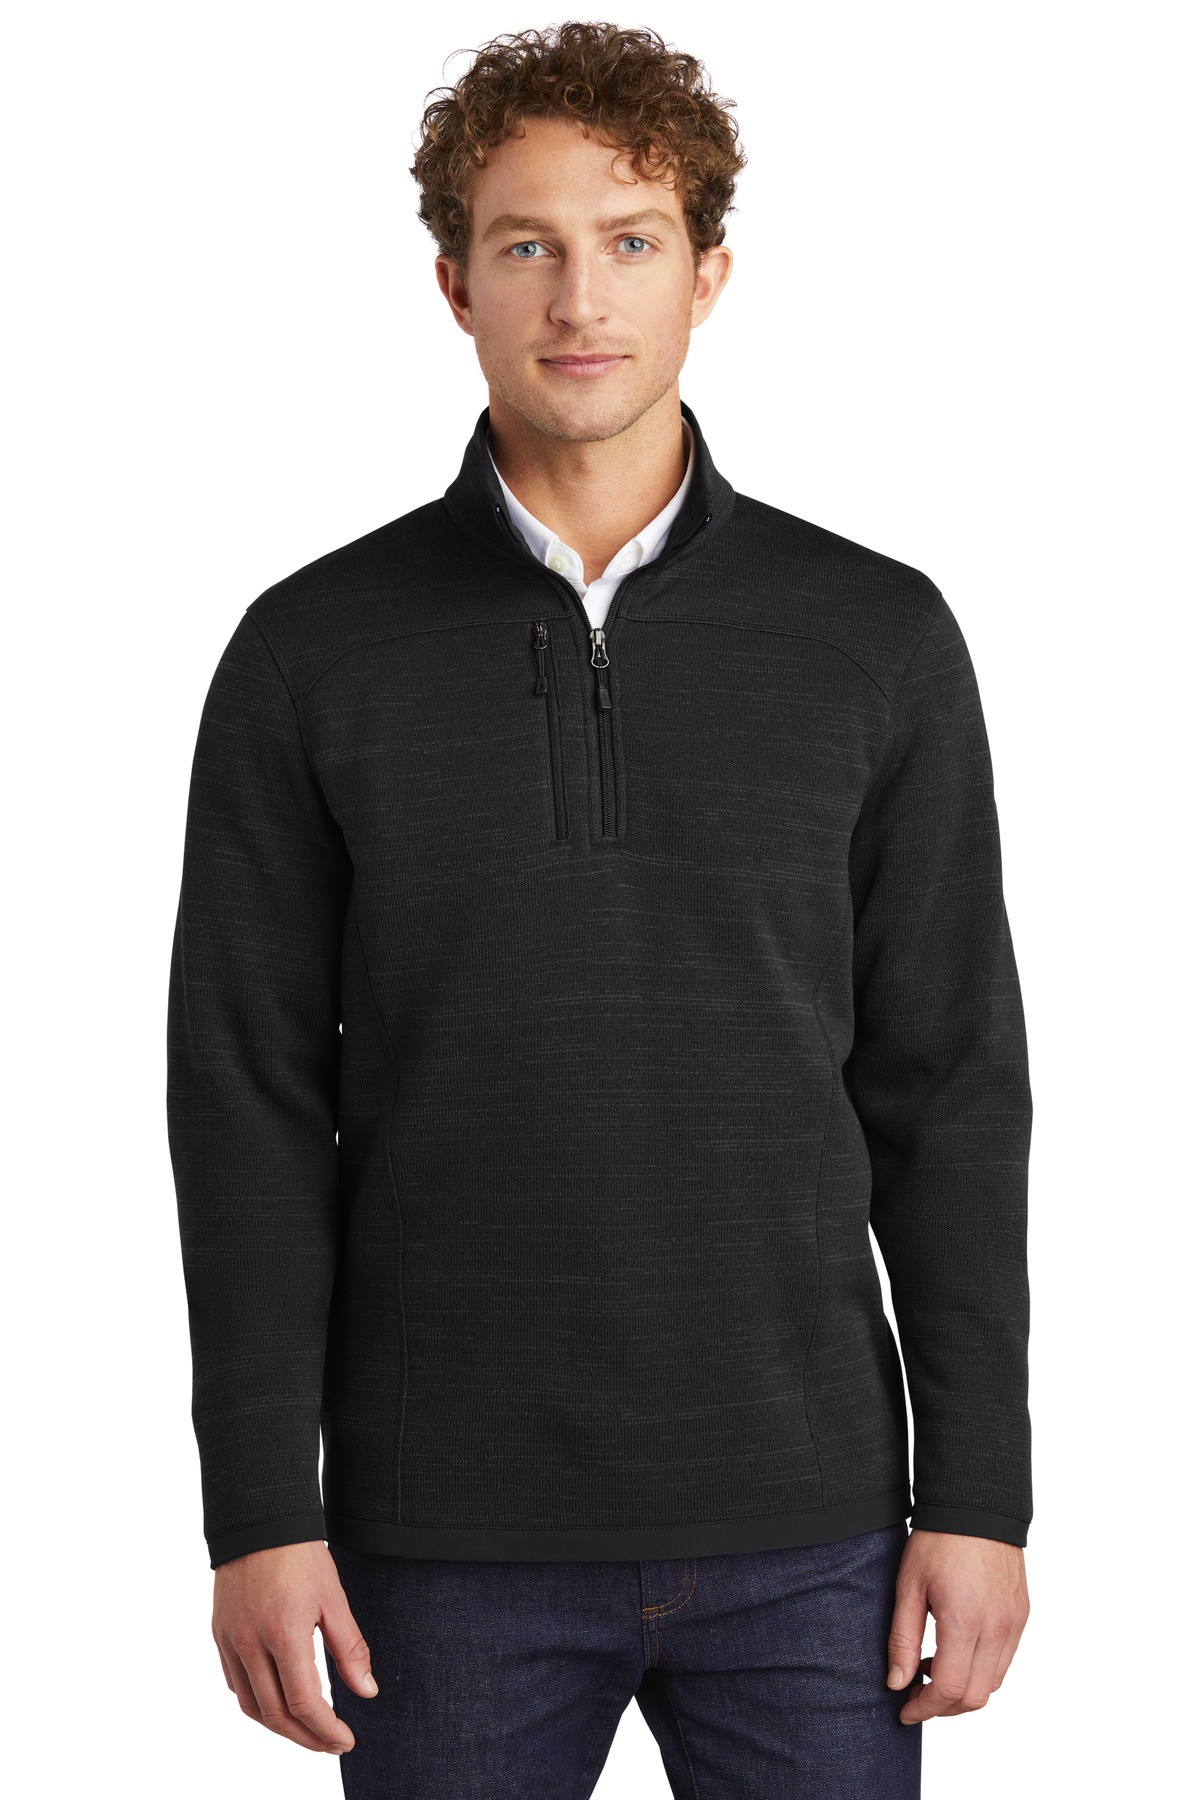 Eddie Bauer Outerwear, Sweat shirts & Fleece for Hospitality ® Sweater Fleece 1/4-Zip.-Eddie Bauer